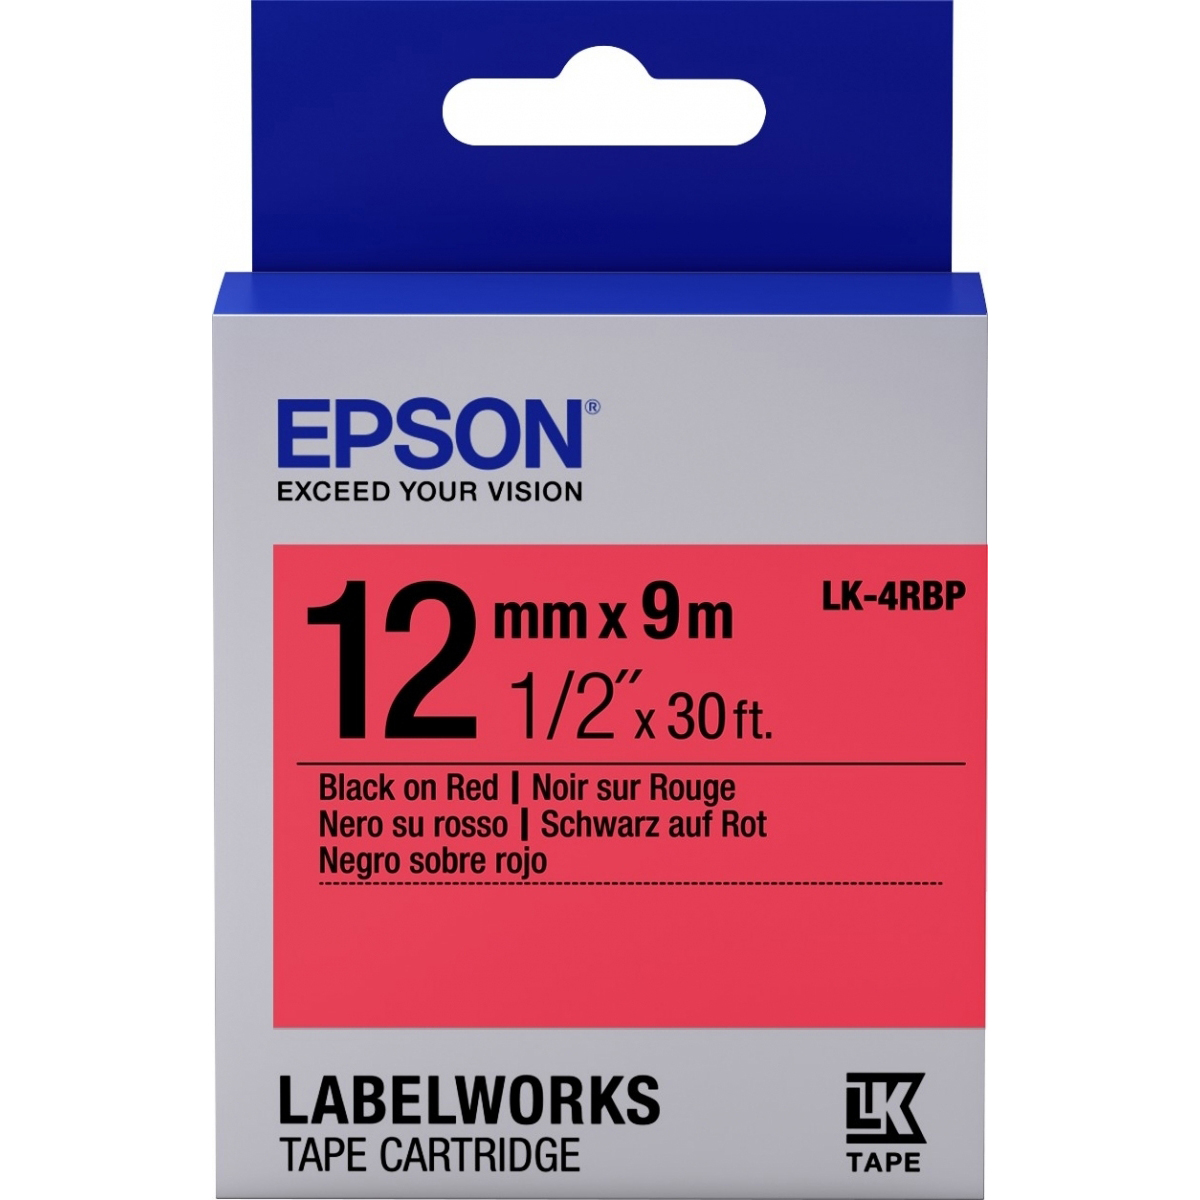 Original Epson Lk-4Rbp Label Cartridge Black/Red 12Mm (9M) (C53S654007)